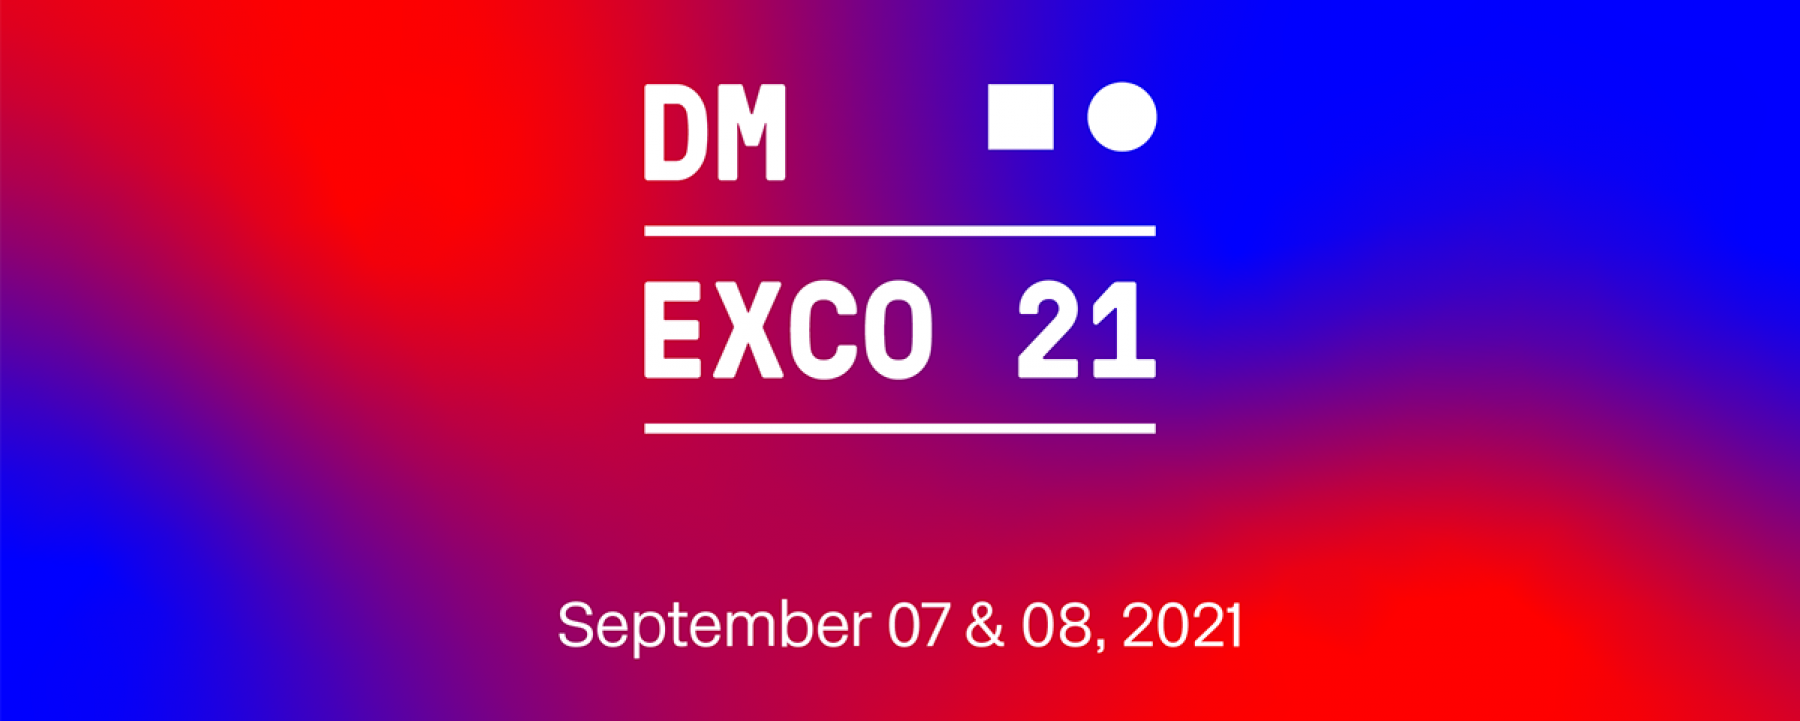 DMEXCO 2021 les 7 et 8 septembre